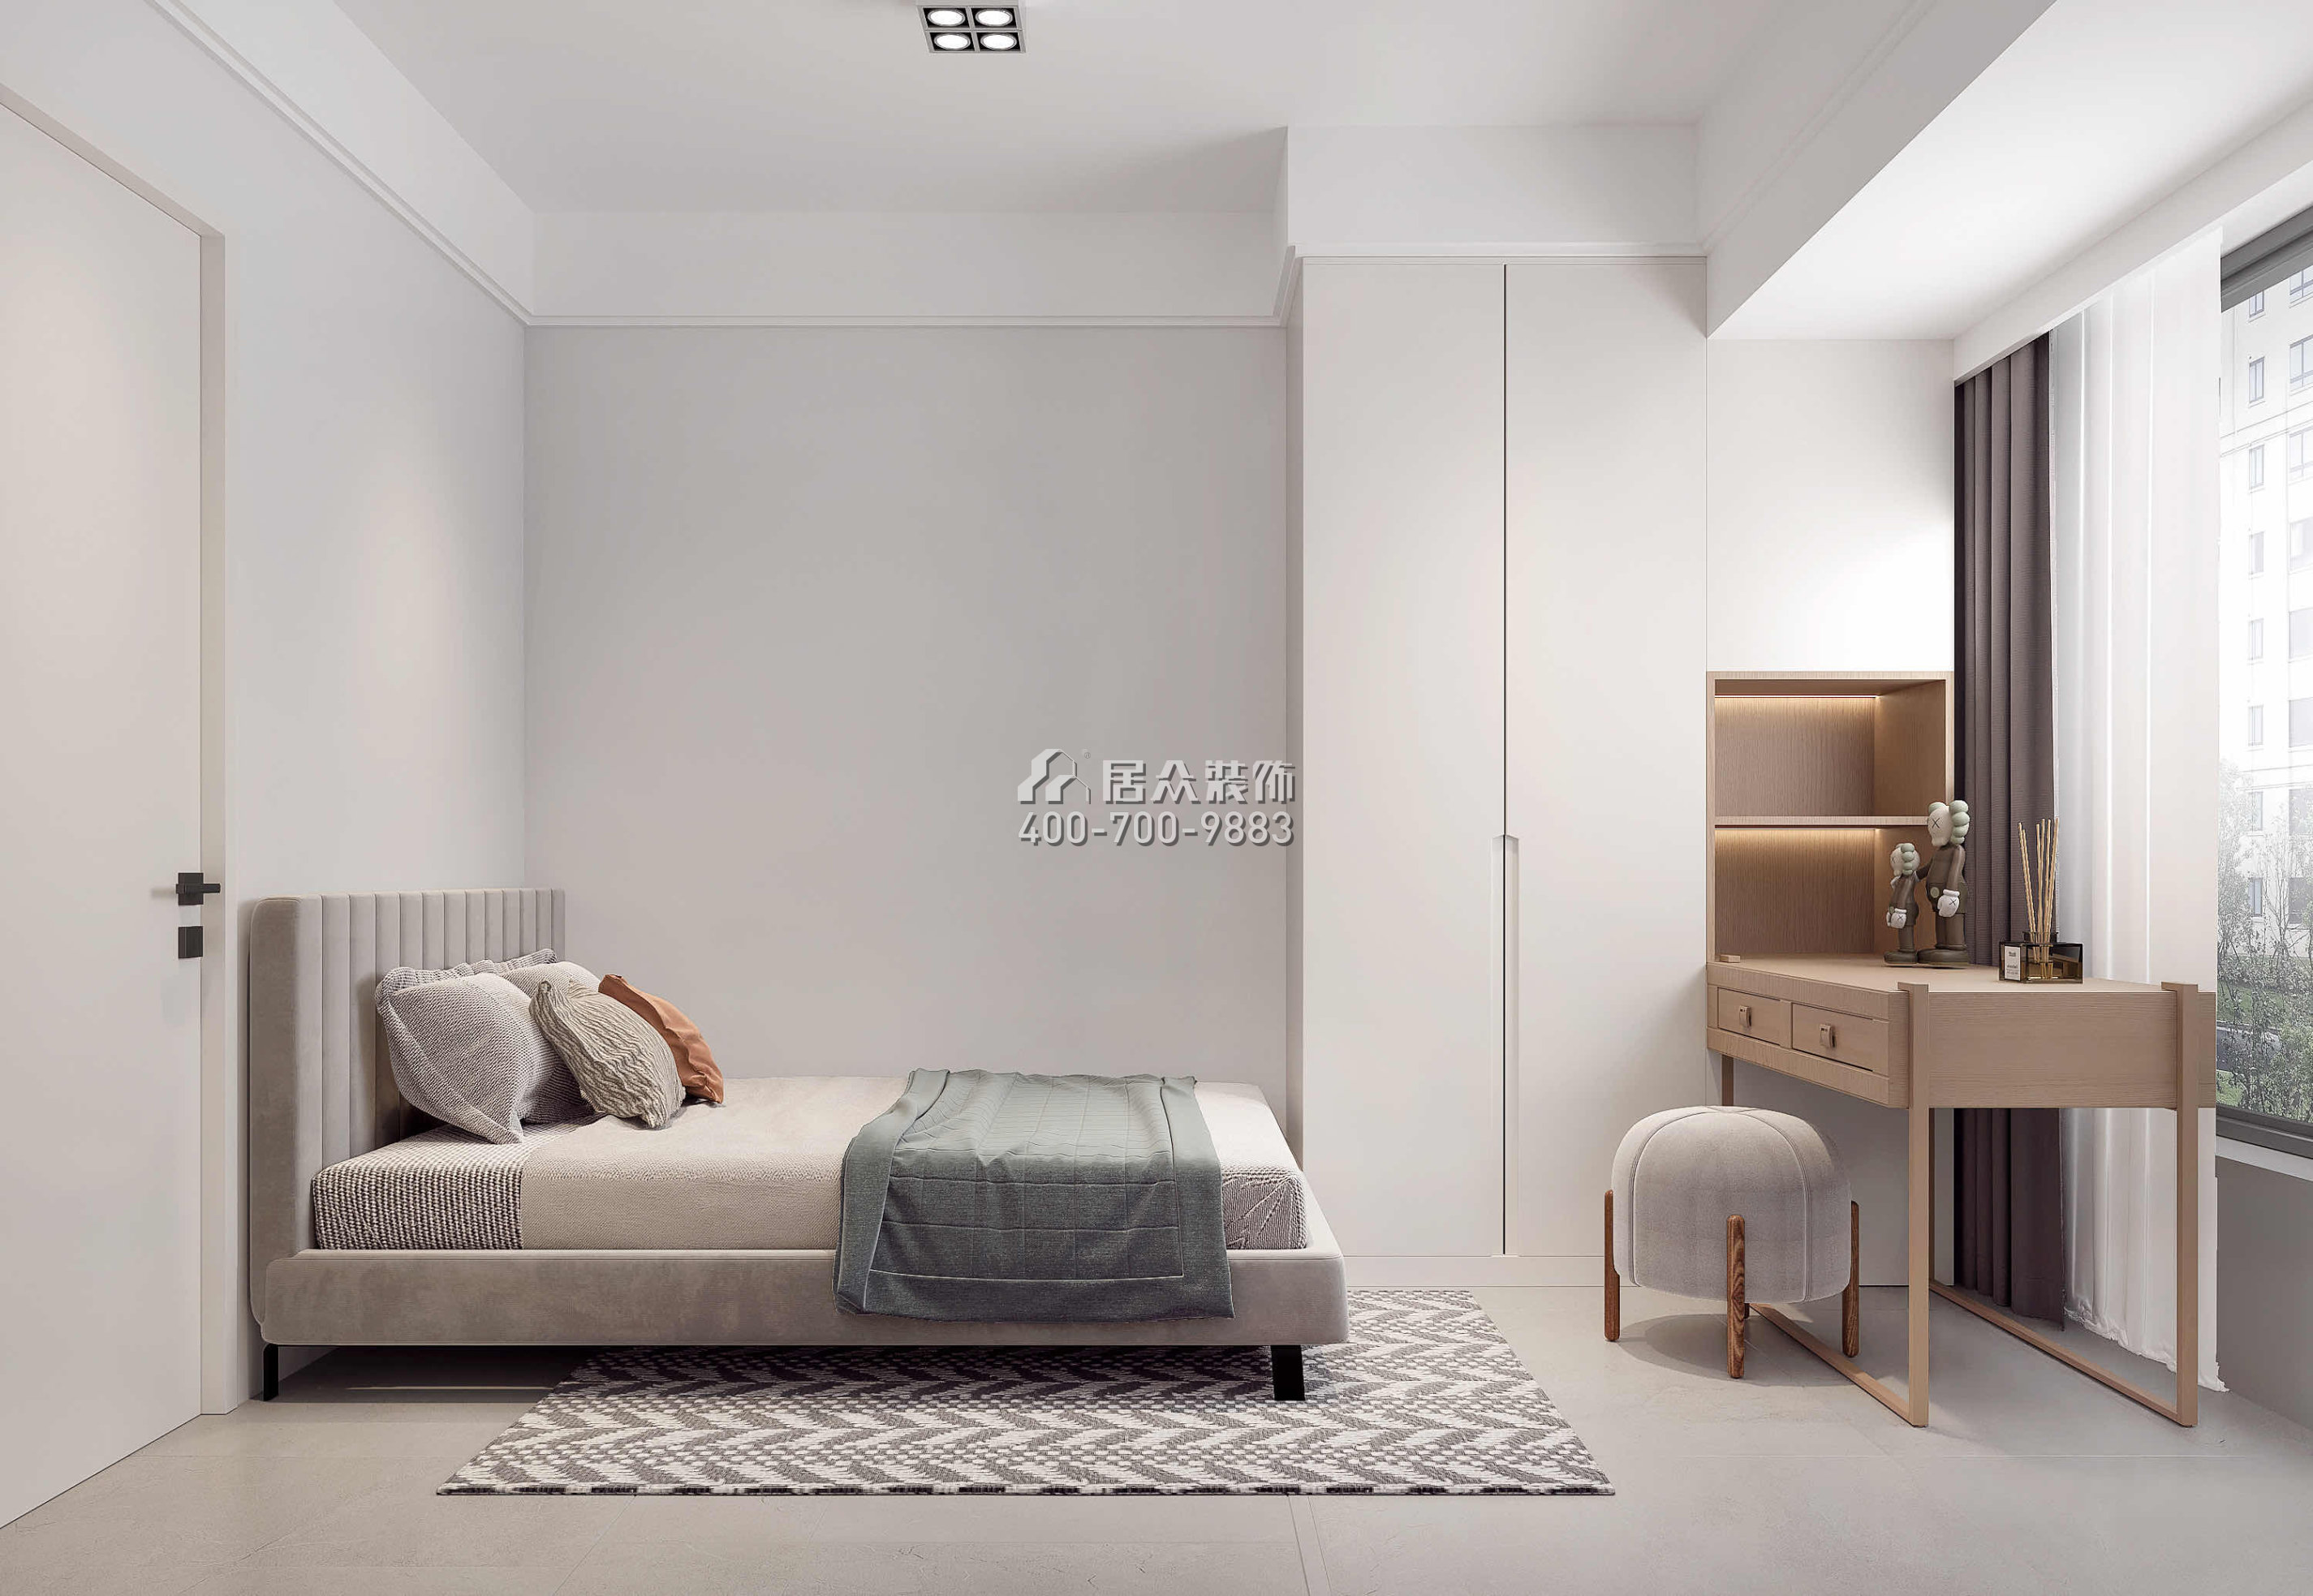 新锦安海纳公馆89平方米现代简约风格平层户型卧室装修效果图